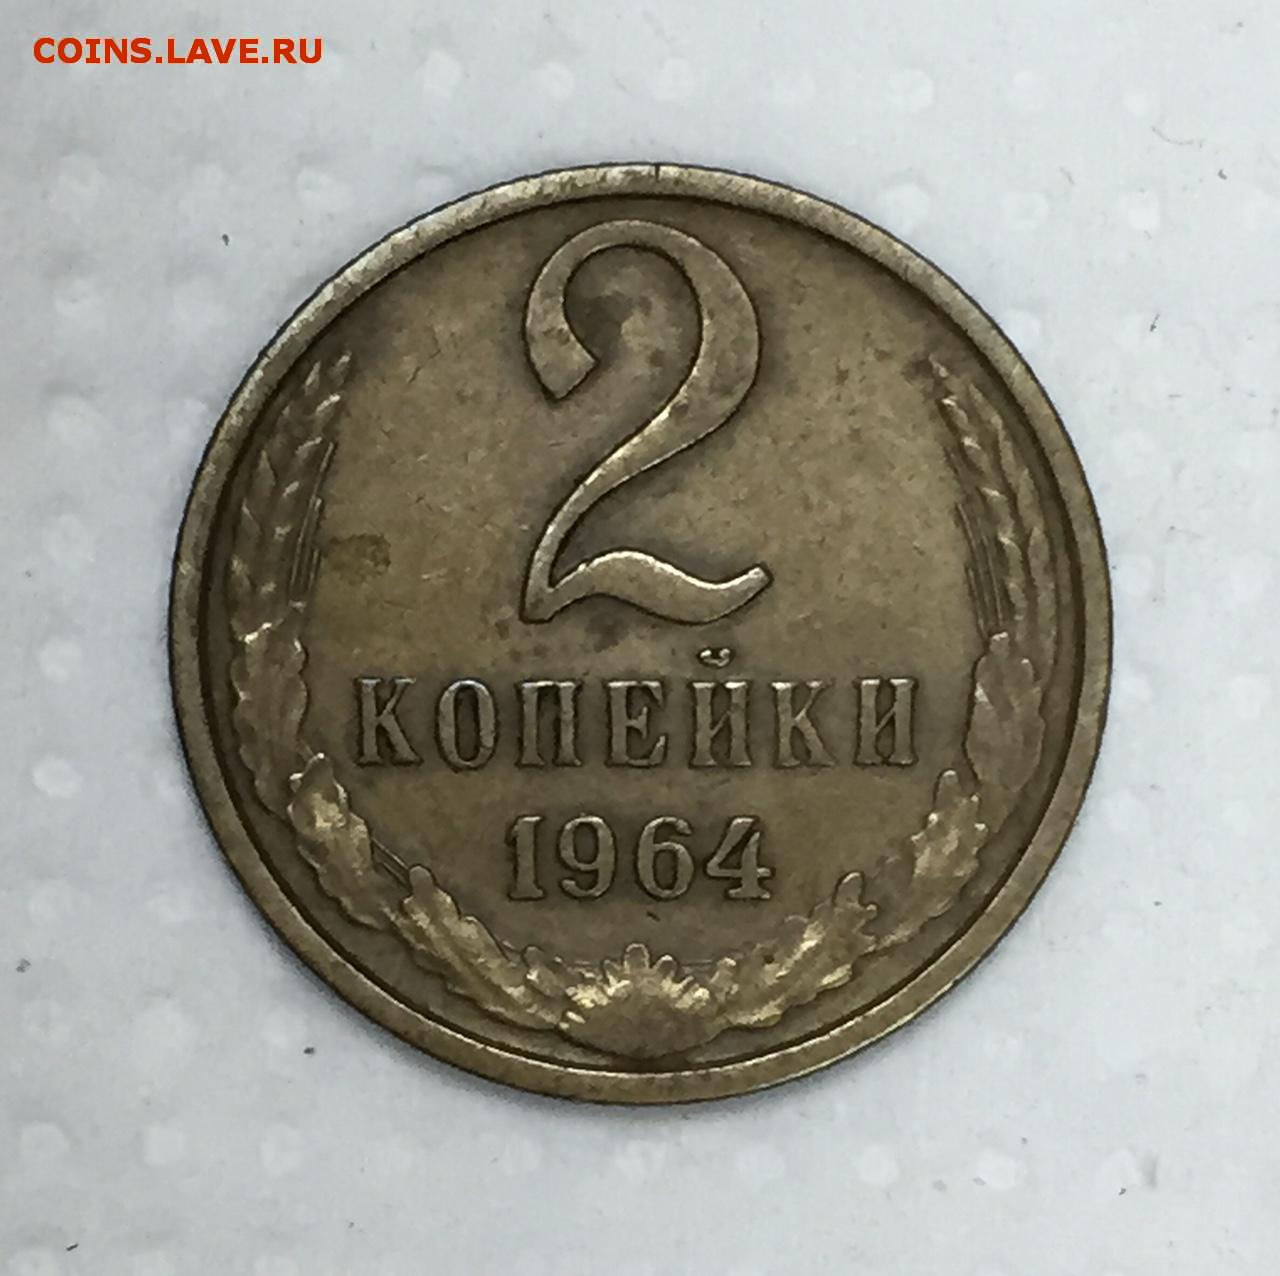 62 рубля 3. 2 Копейки 1964. 3 Рубля 62 копейки. 3 Копейки 1964. 62 Копейки.